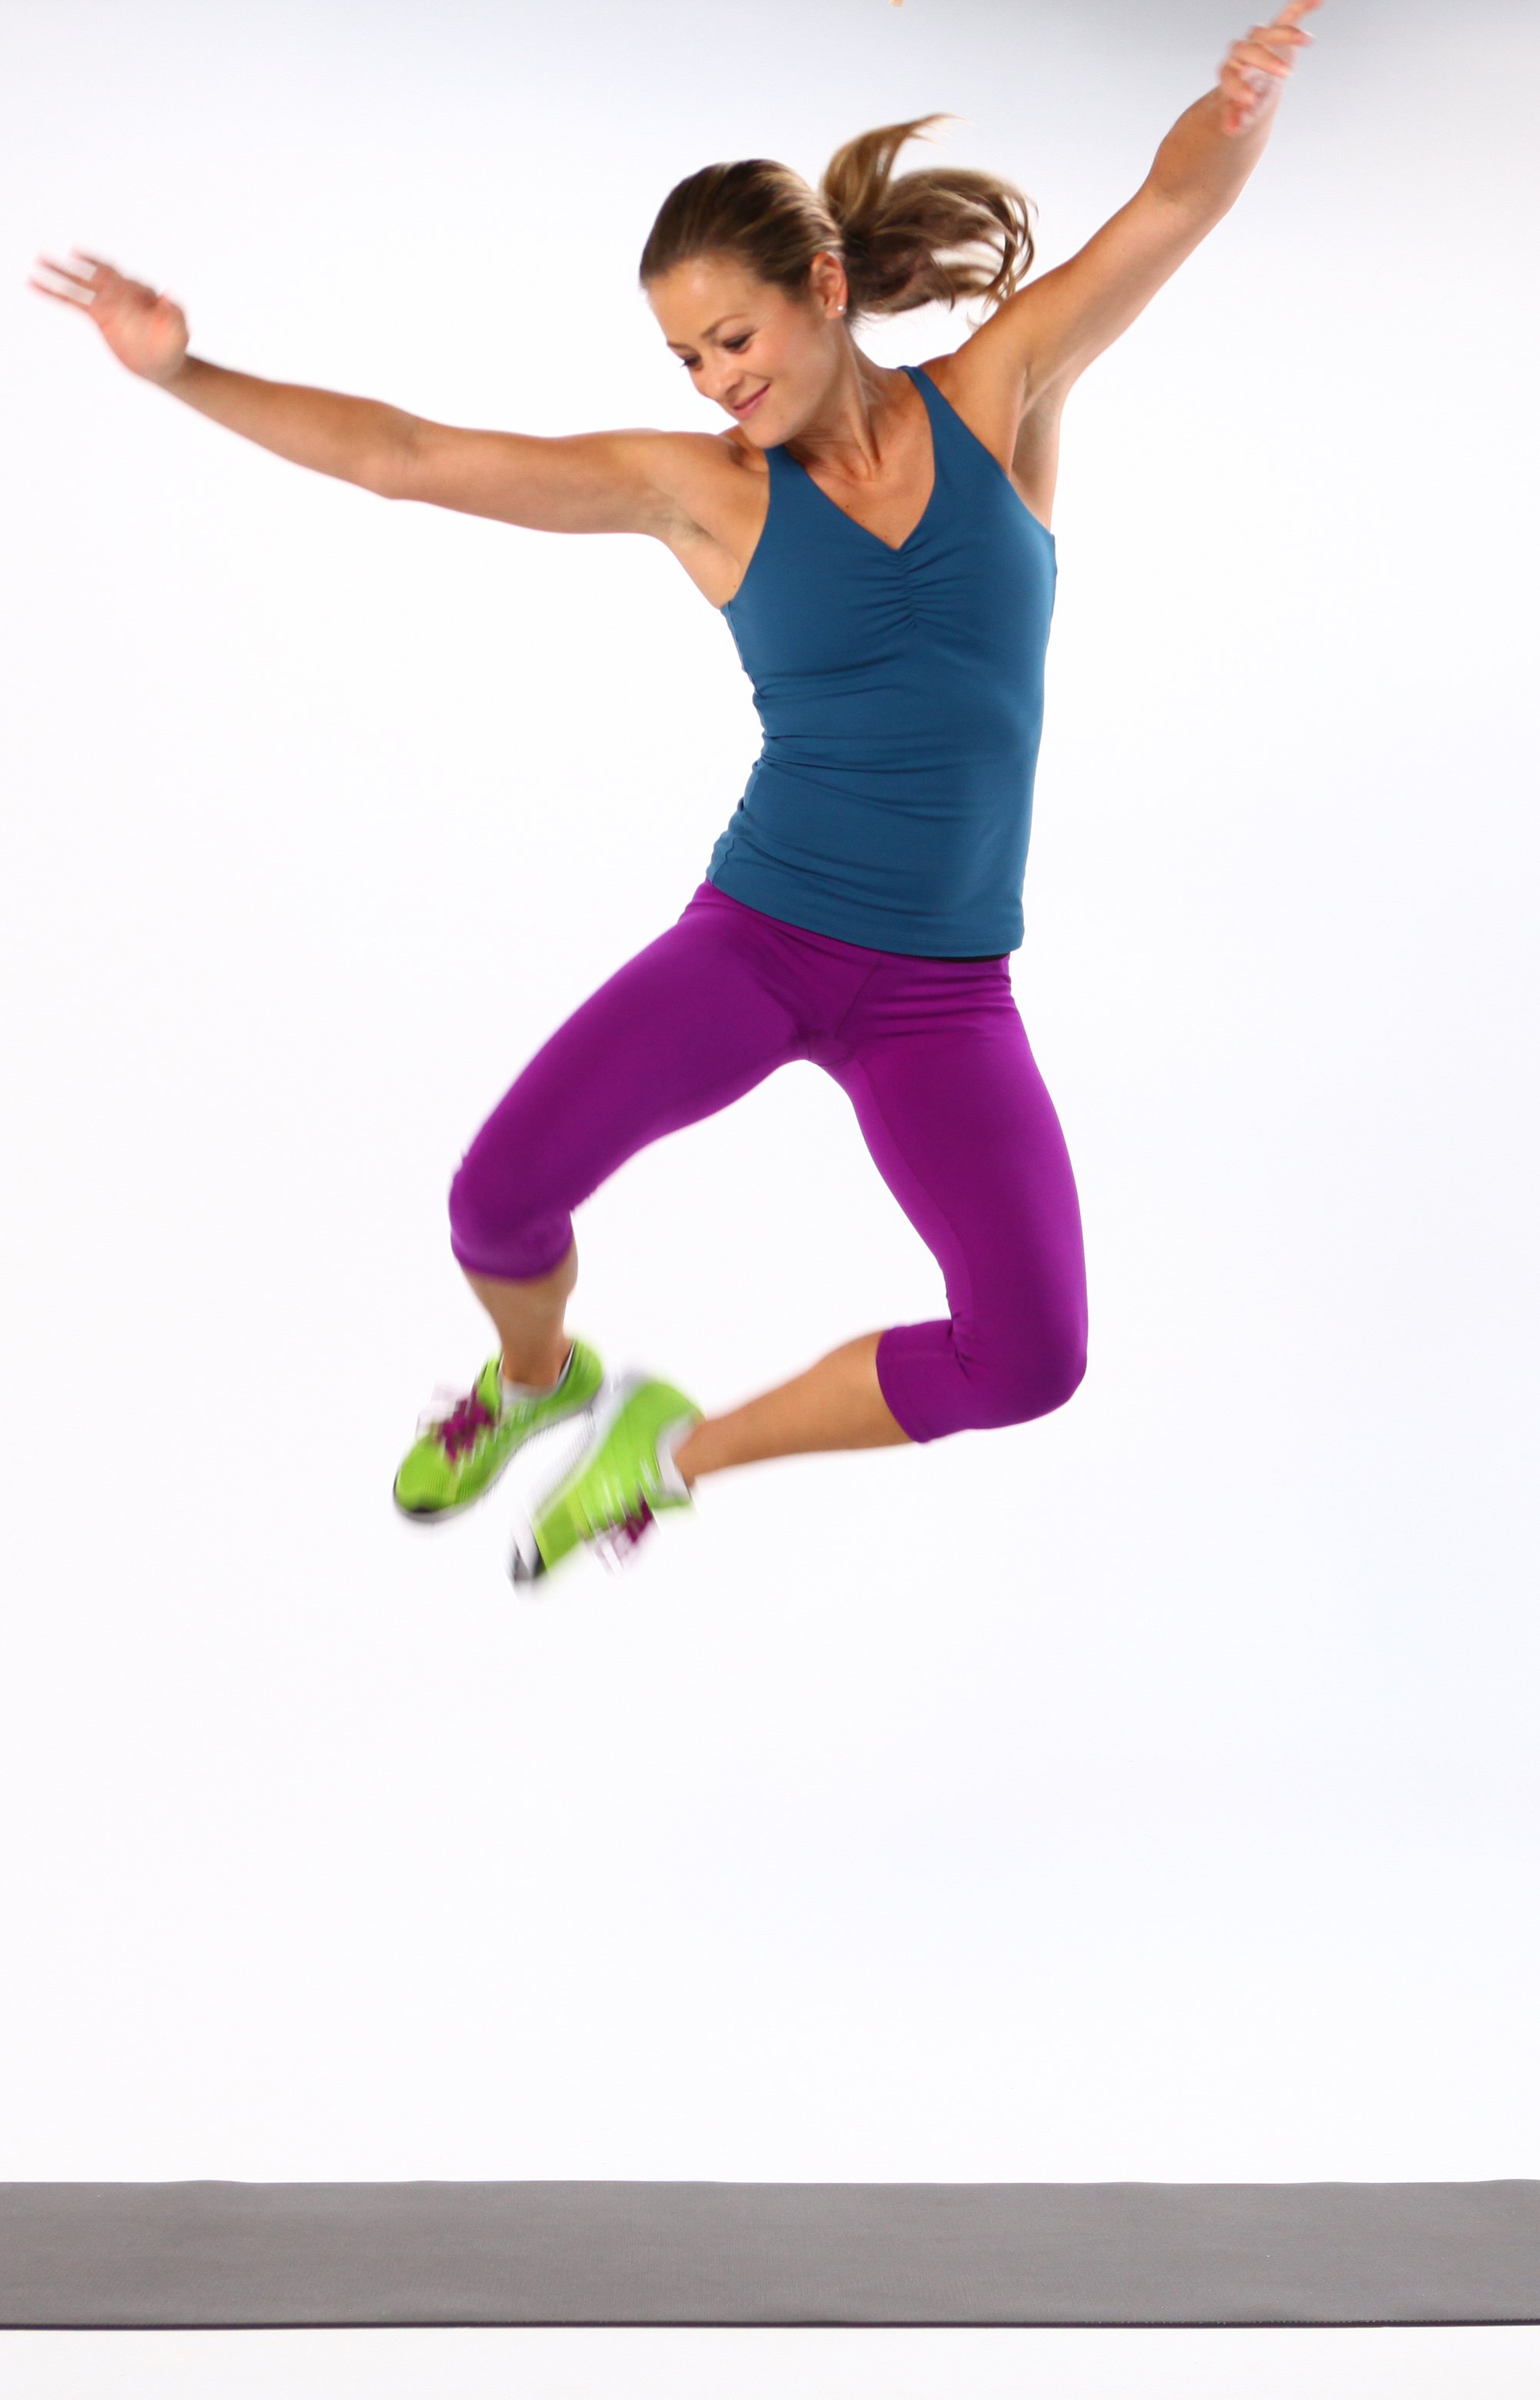 How to Do a Heel-Click Jump | POPSUGAR Fitness